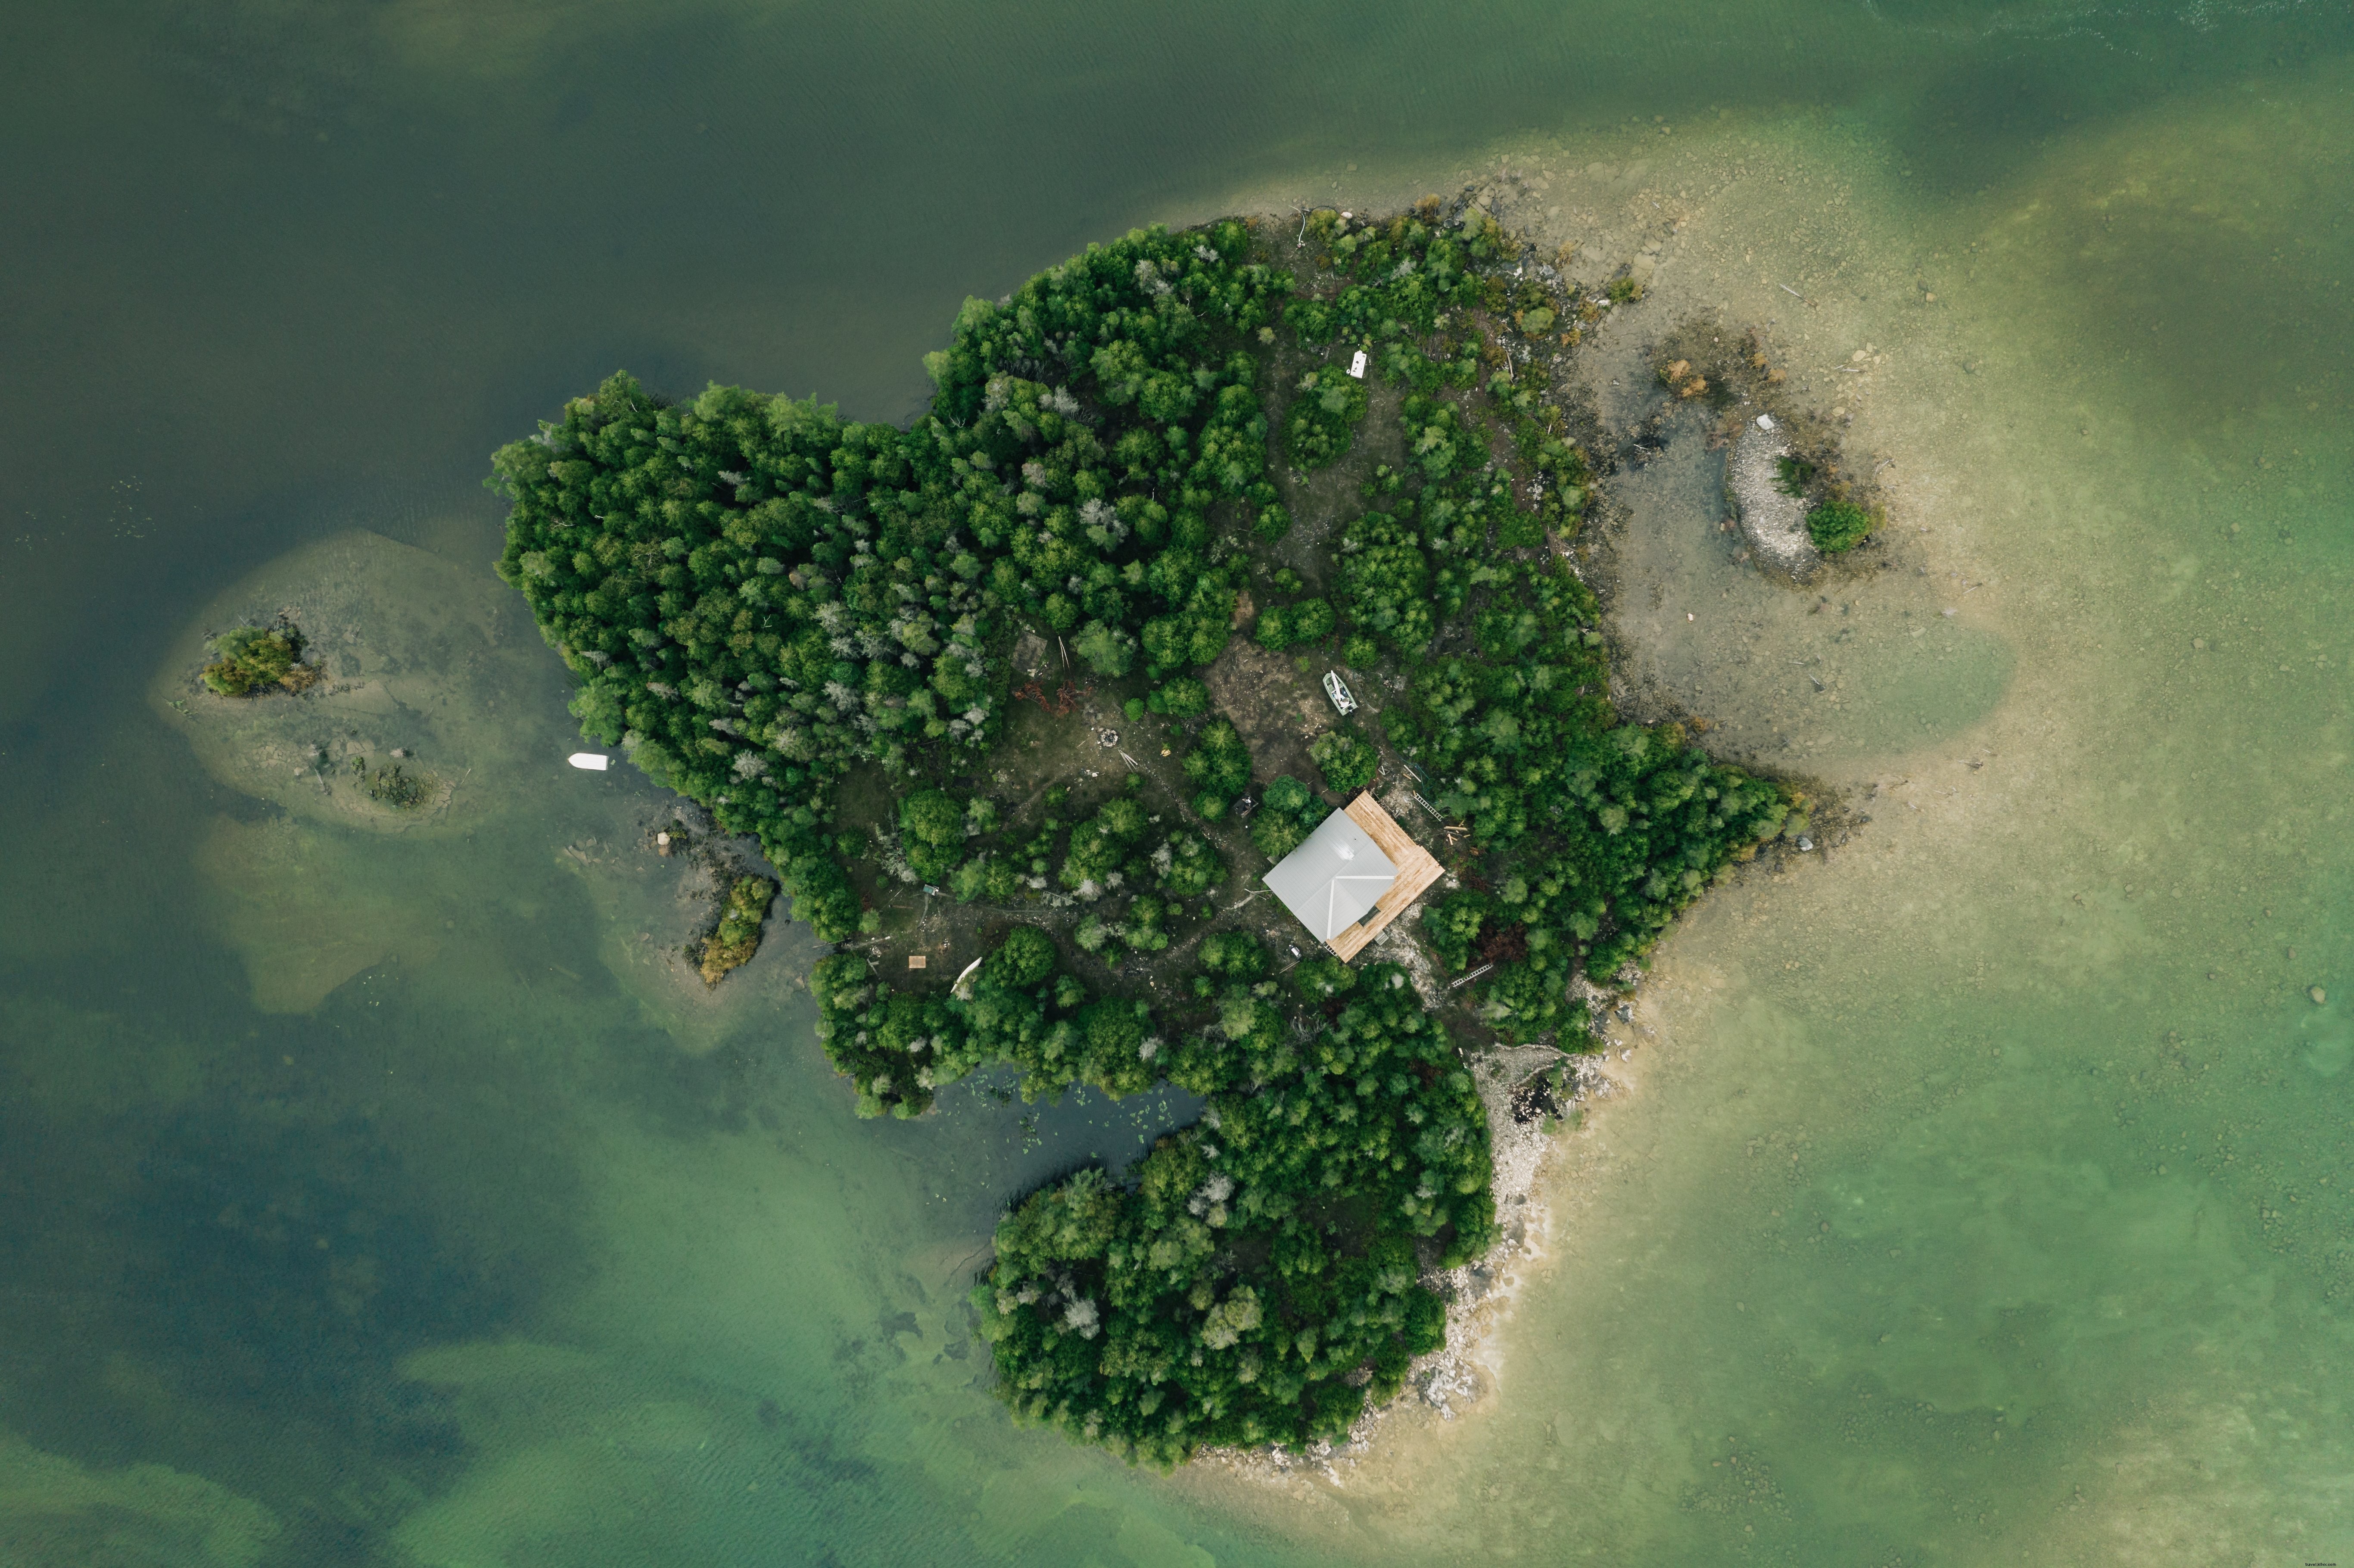 Île isolée à la maison à partir de la photo de la maison 